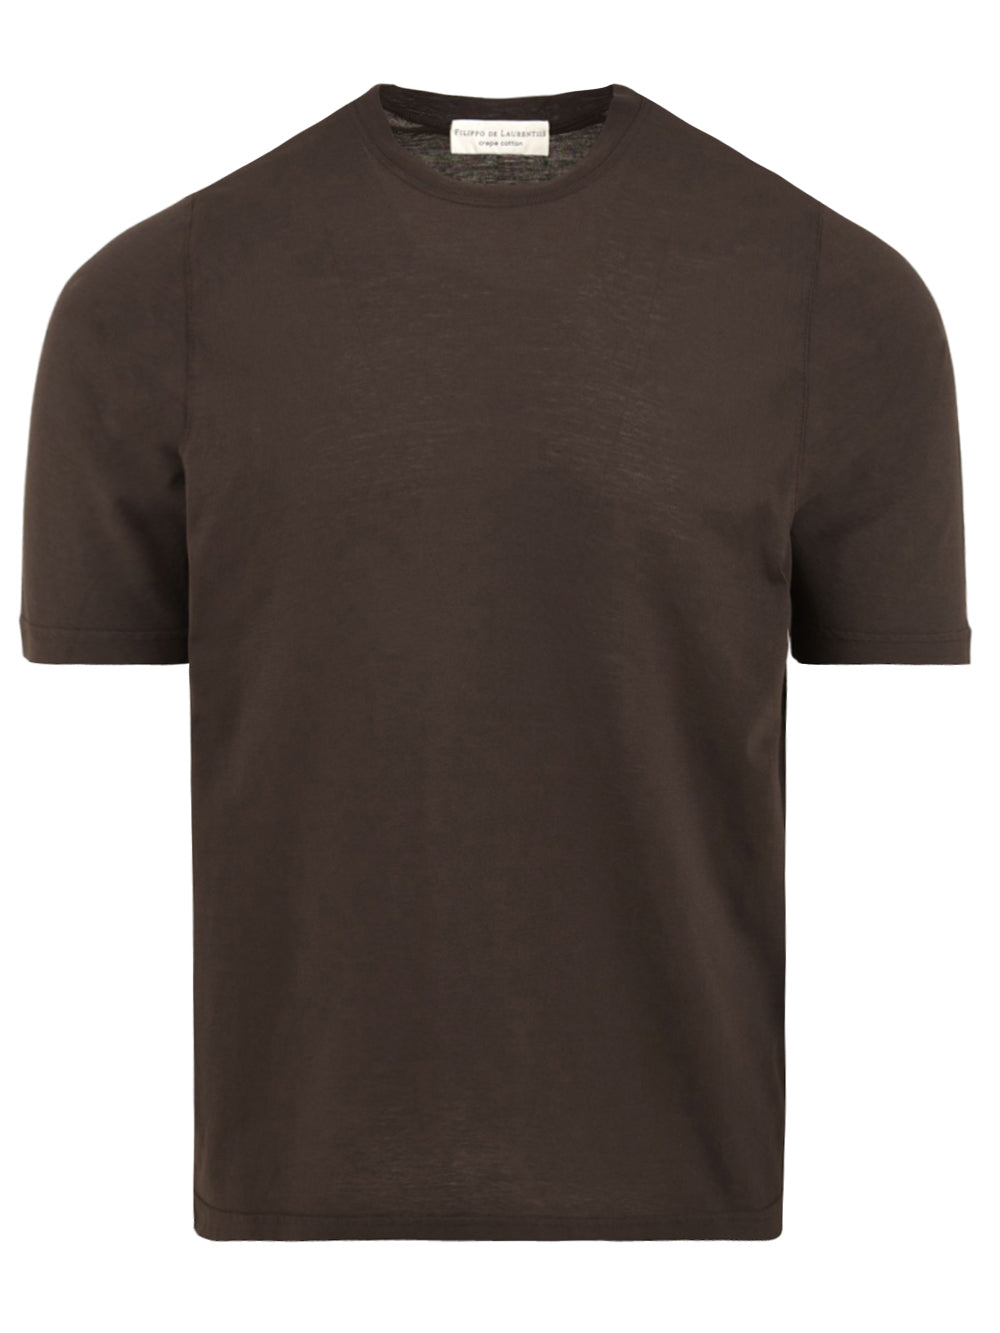 Dark brown t-shirt